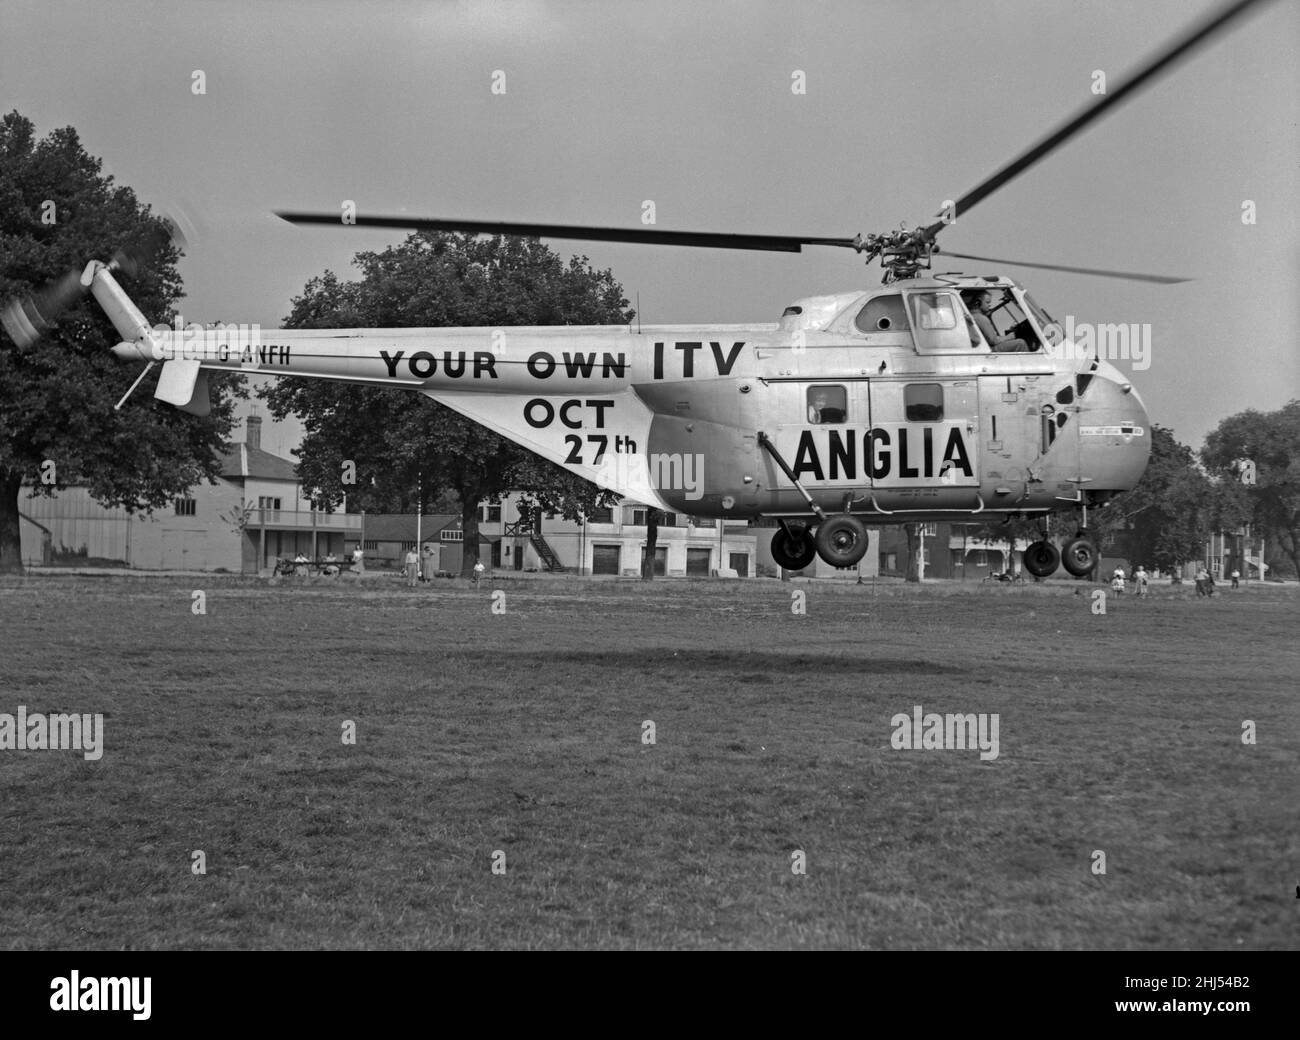 Westland WS-55 Whirlwind Series 1 elicottero G-ANFH in charter da BEA ad Anglia Television come parte del loro lancio di canale che ha avuto luogo il 27th ottobre 1959. Alle donne che giravano con il vortice fu assegnato il titolo: 'Helibelles' visto qui atterrare in un parco senza nome di Cambridge. Circa settembre 1959 Foto Stock